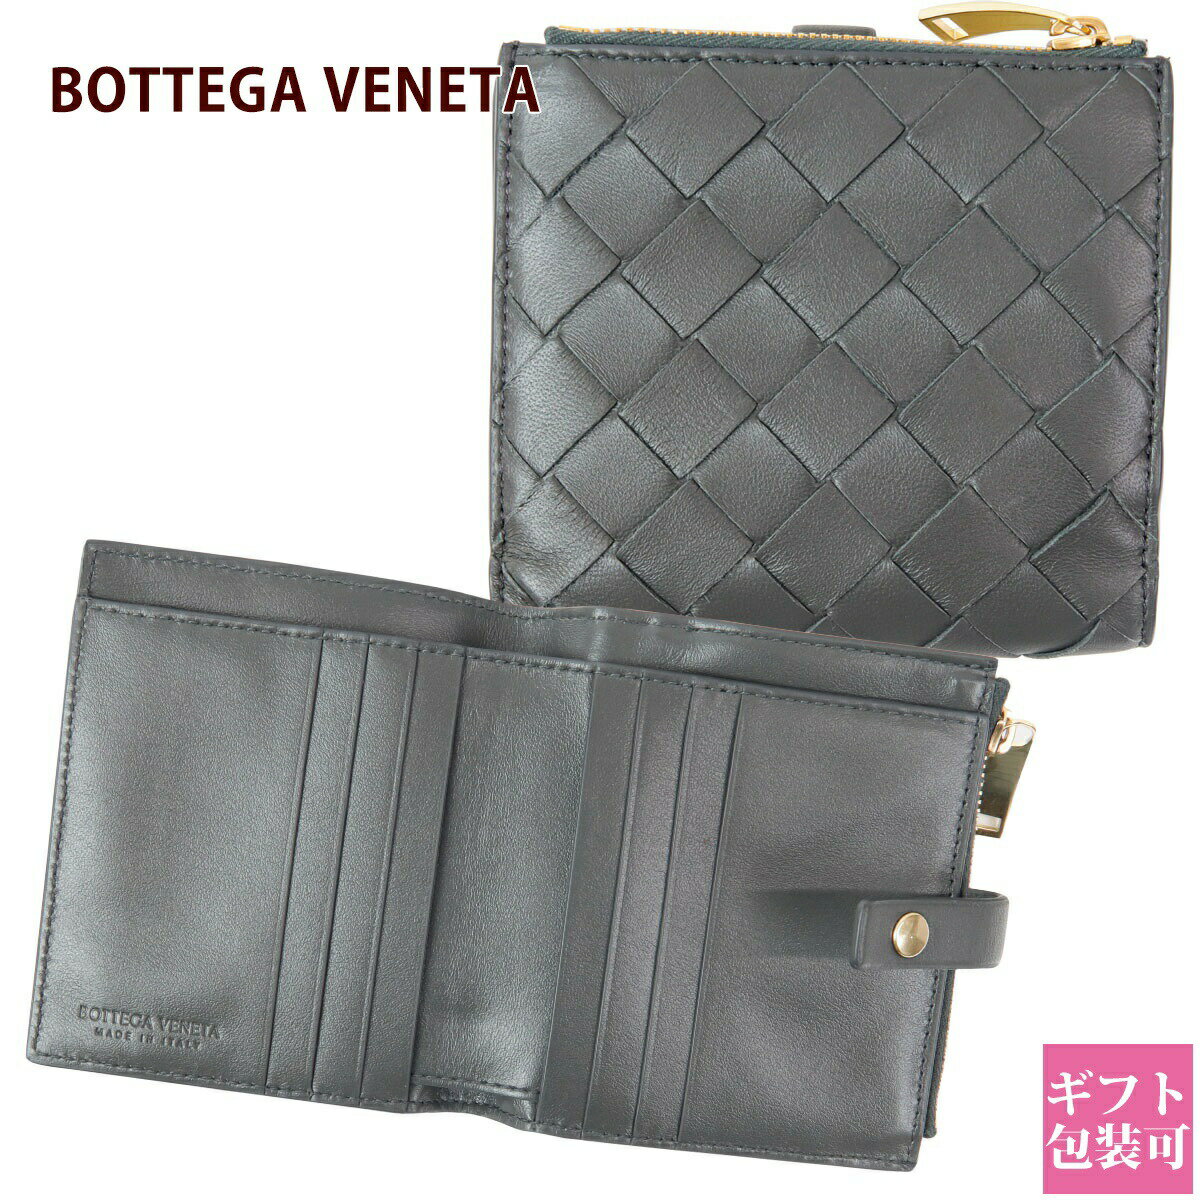 ボッテガ・ヴェネタ 二つ折り財布 レディース 人気ブランドランキング